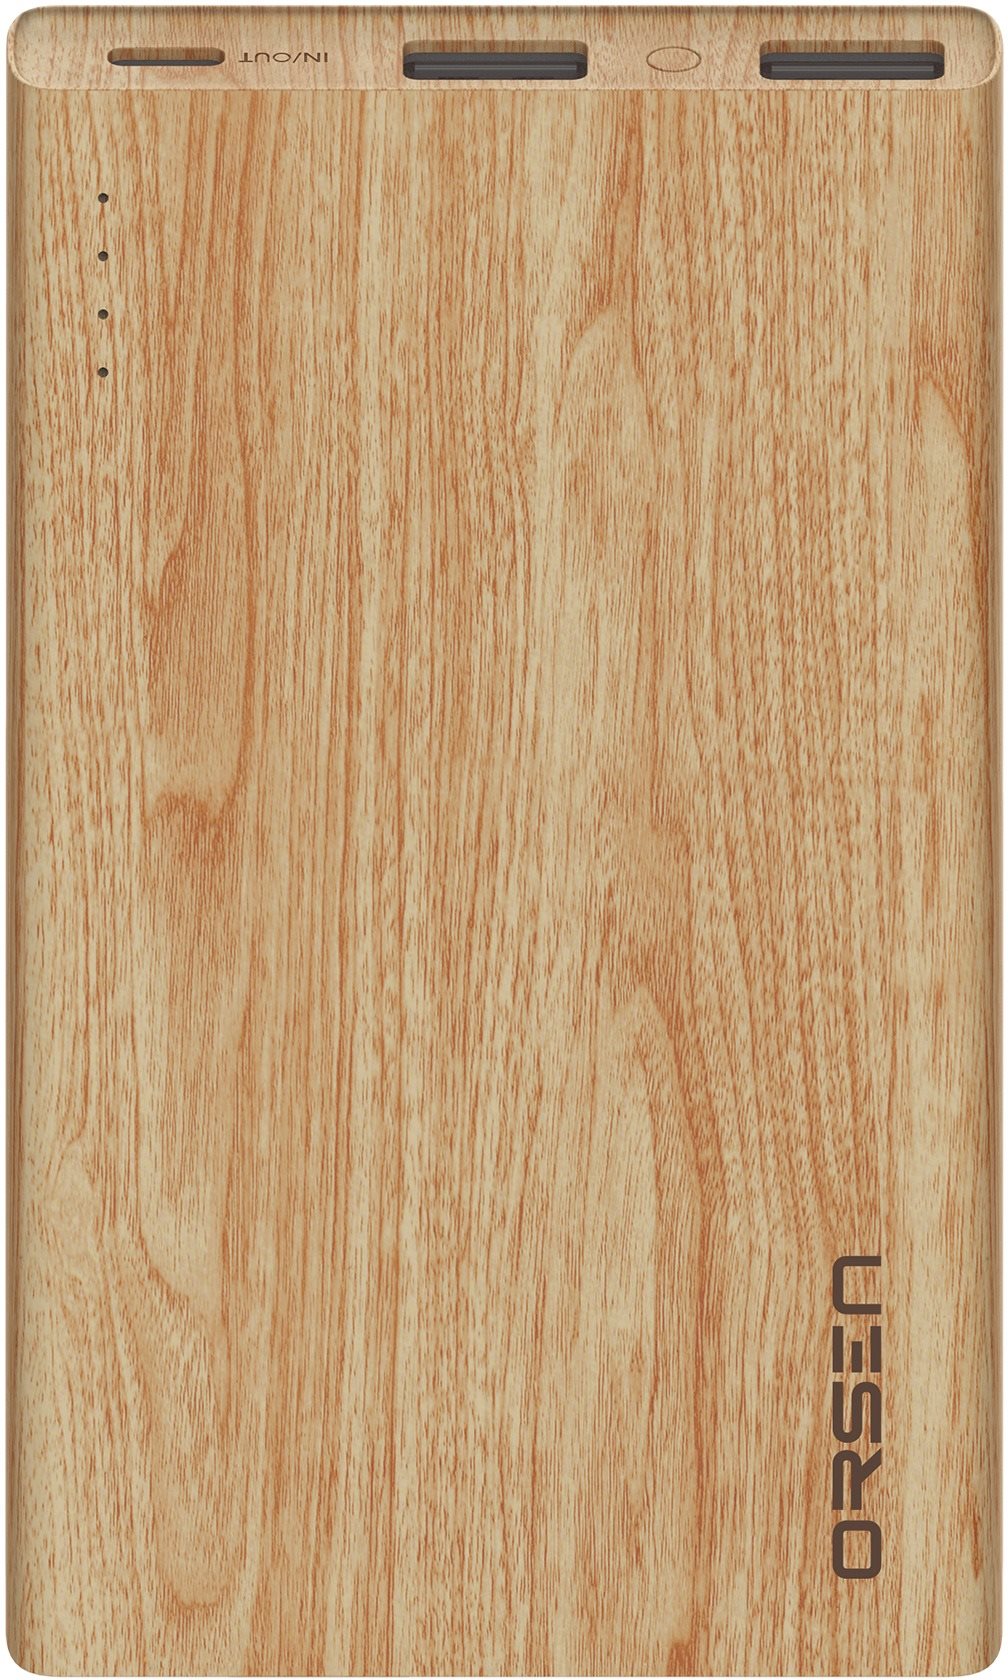 Eloop E12_PD20W 11000mAh Powerbank Wood